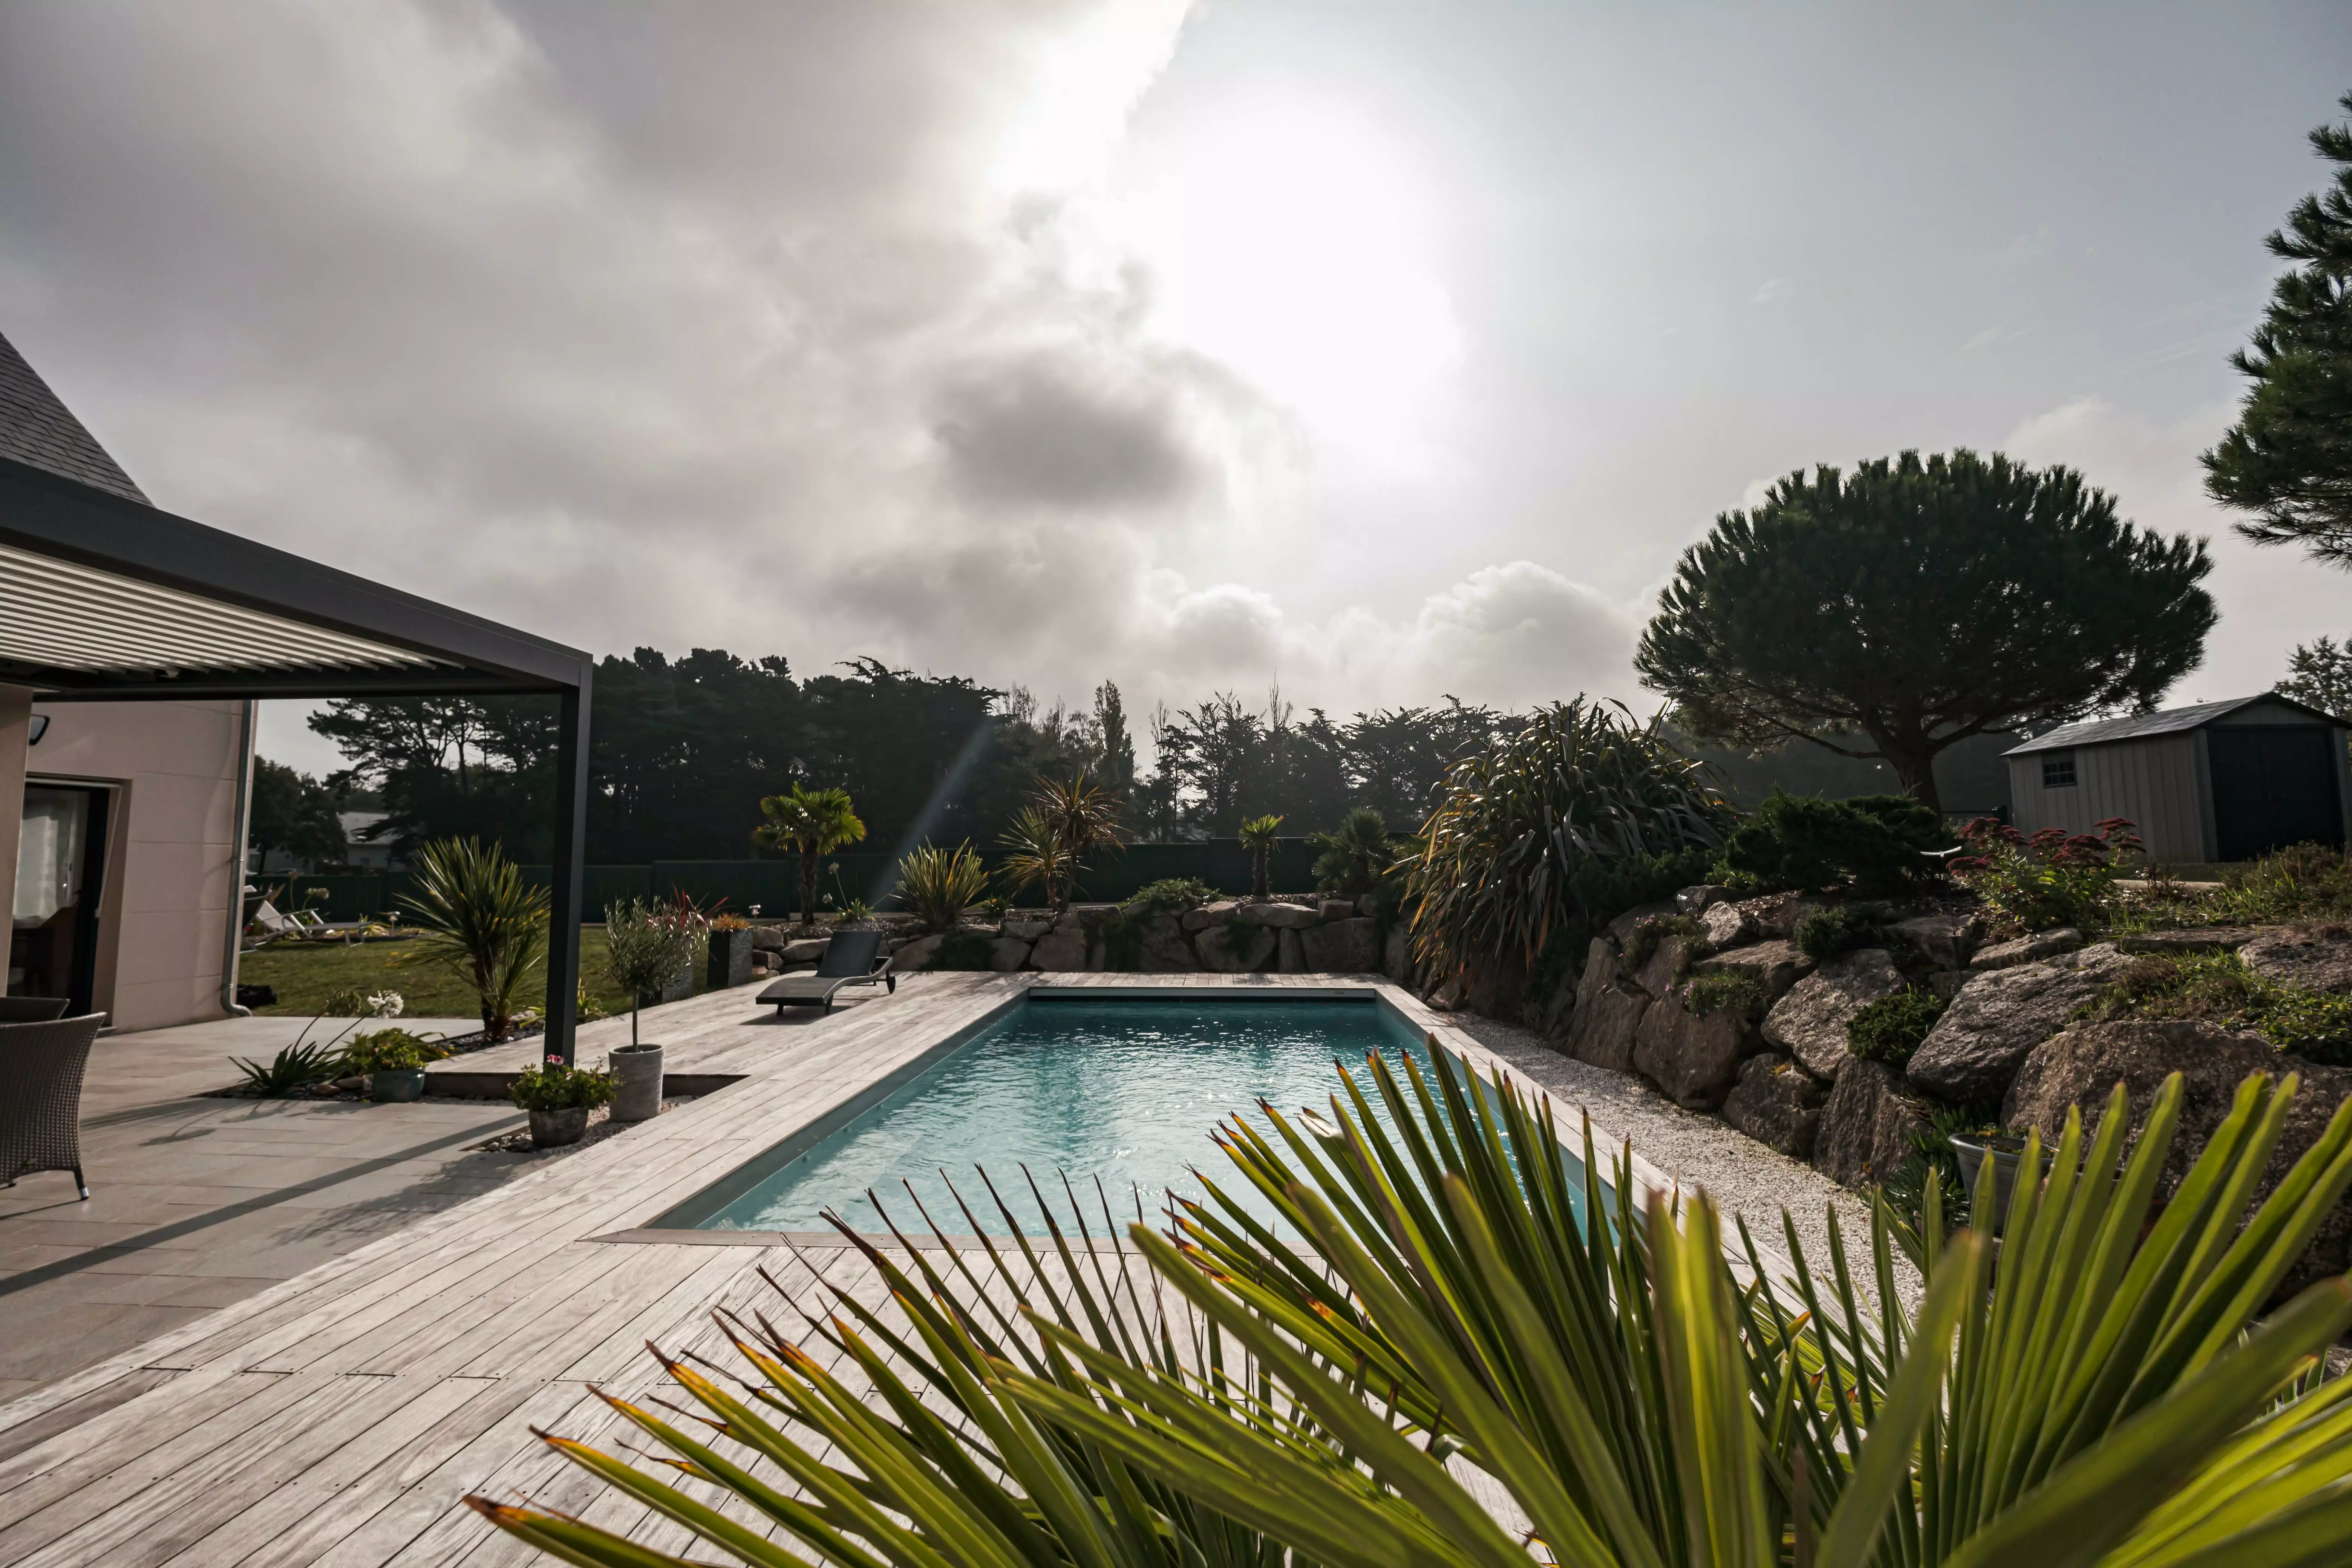 Une maison d'aujourd'hui où la piscine joue le rôle principal, connectée via une terrasse à un cadre rocheux étoffé de plantes venues d'ailleurs.